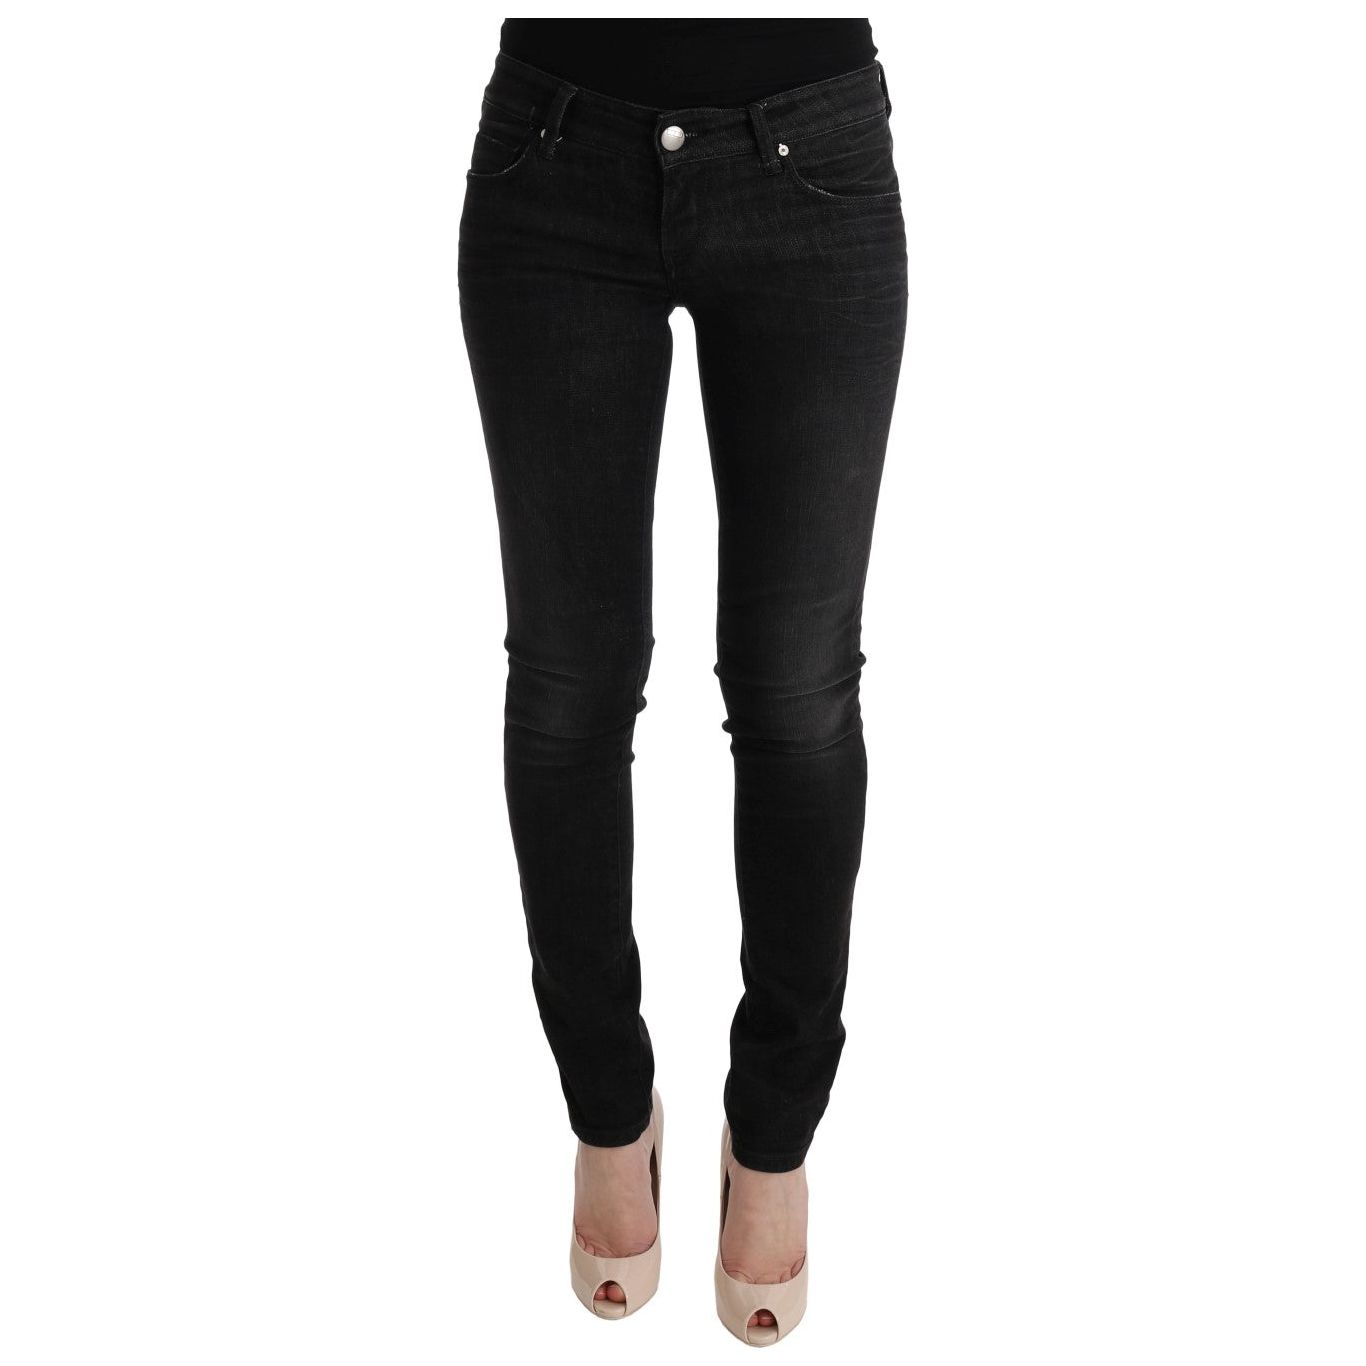 Acht Chic Slim Fit Black Cotton Jeans Jeans & Pants black-denim-cotton-bottoms-slim-fit-jeans 449507-black-denim-cotton-bottoms-slim-fit-jeans.jpg